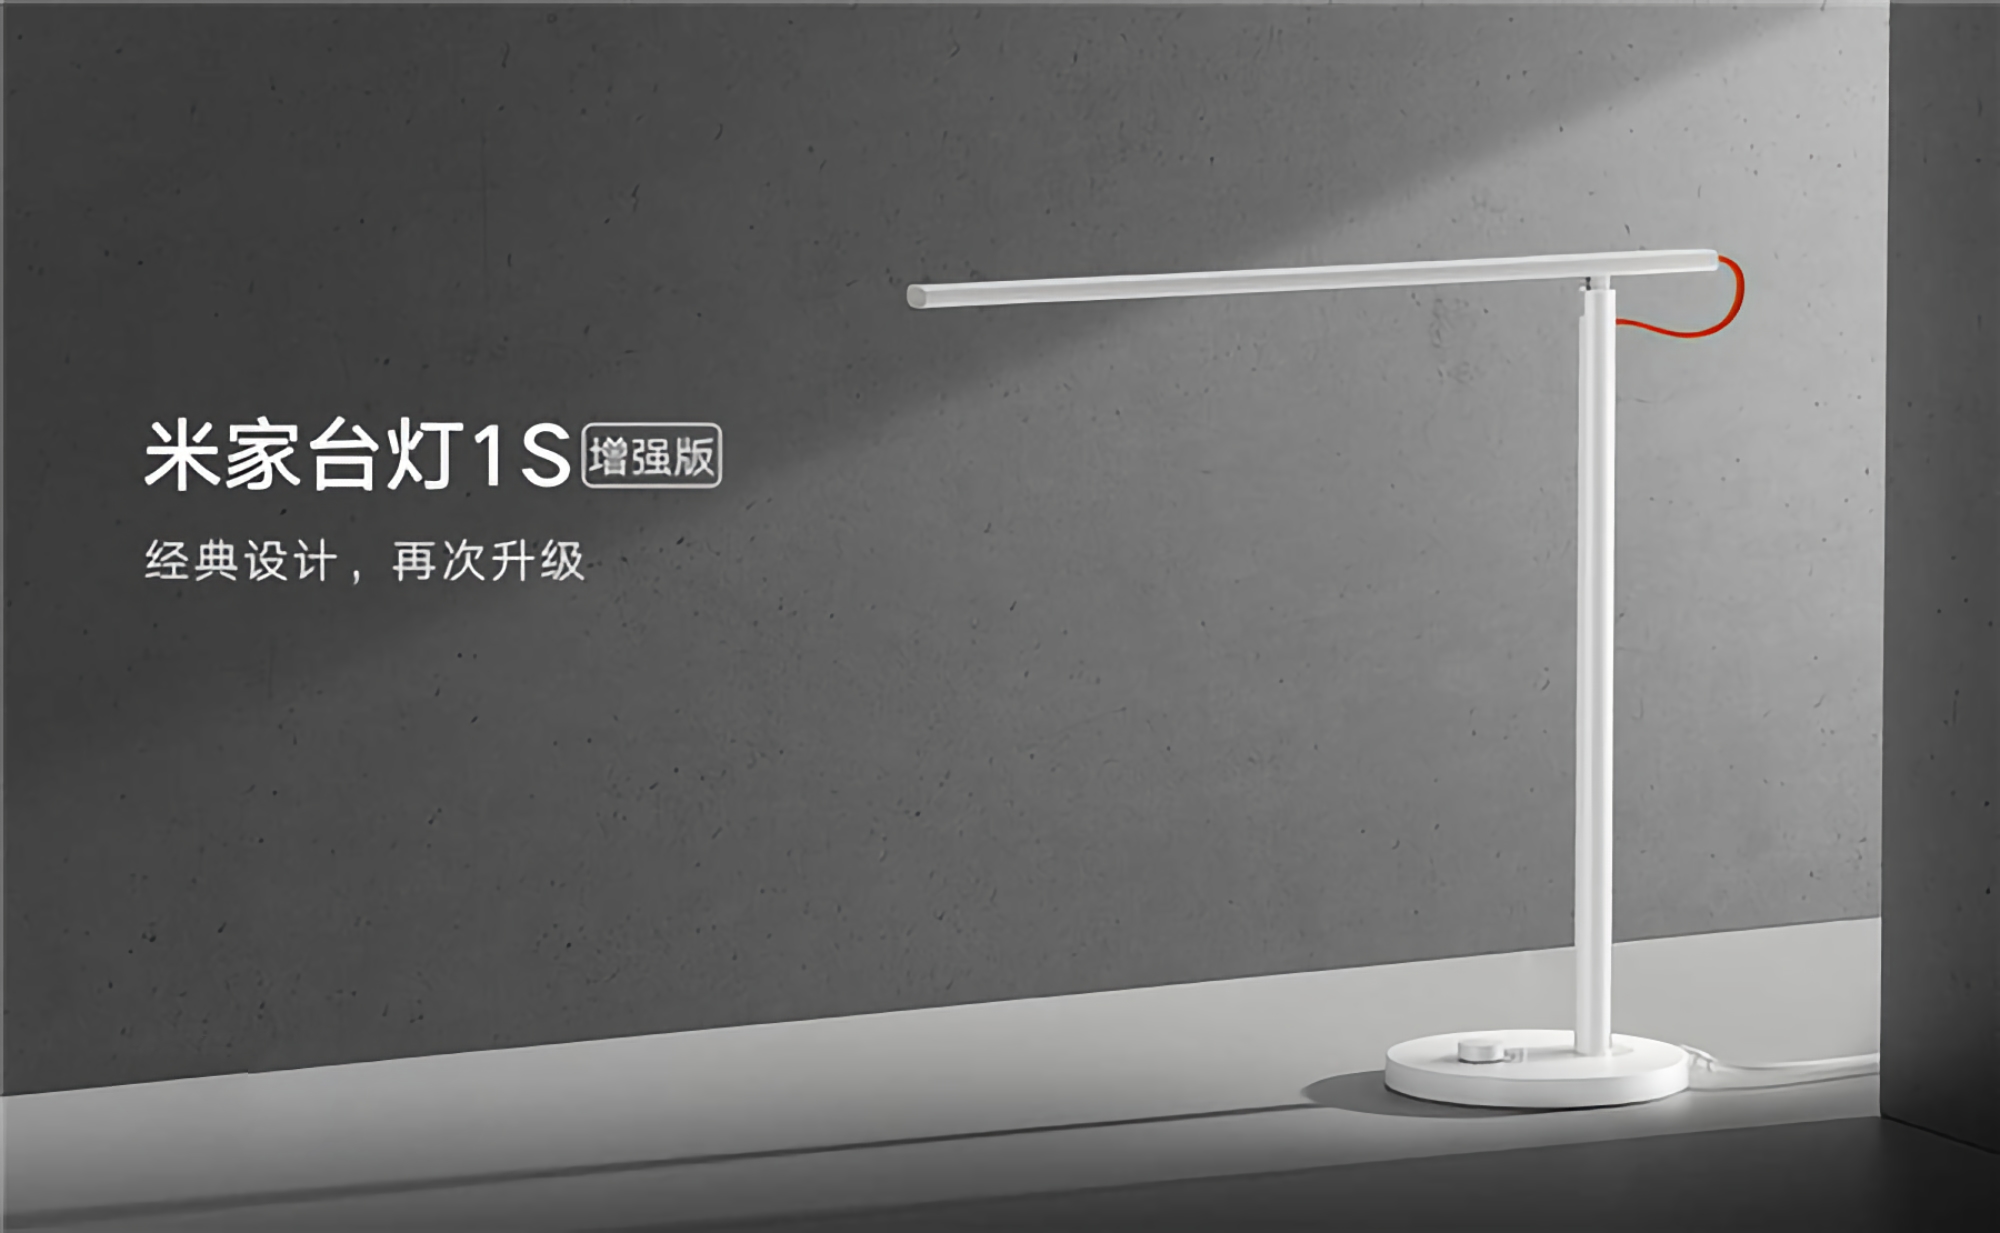 Xiaomi презентувала розумну лампу MiJia Desk Lamp 1S Enhanced з новим світлодіодним модулем та ціною $30